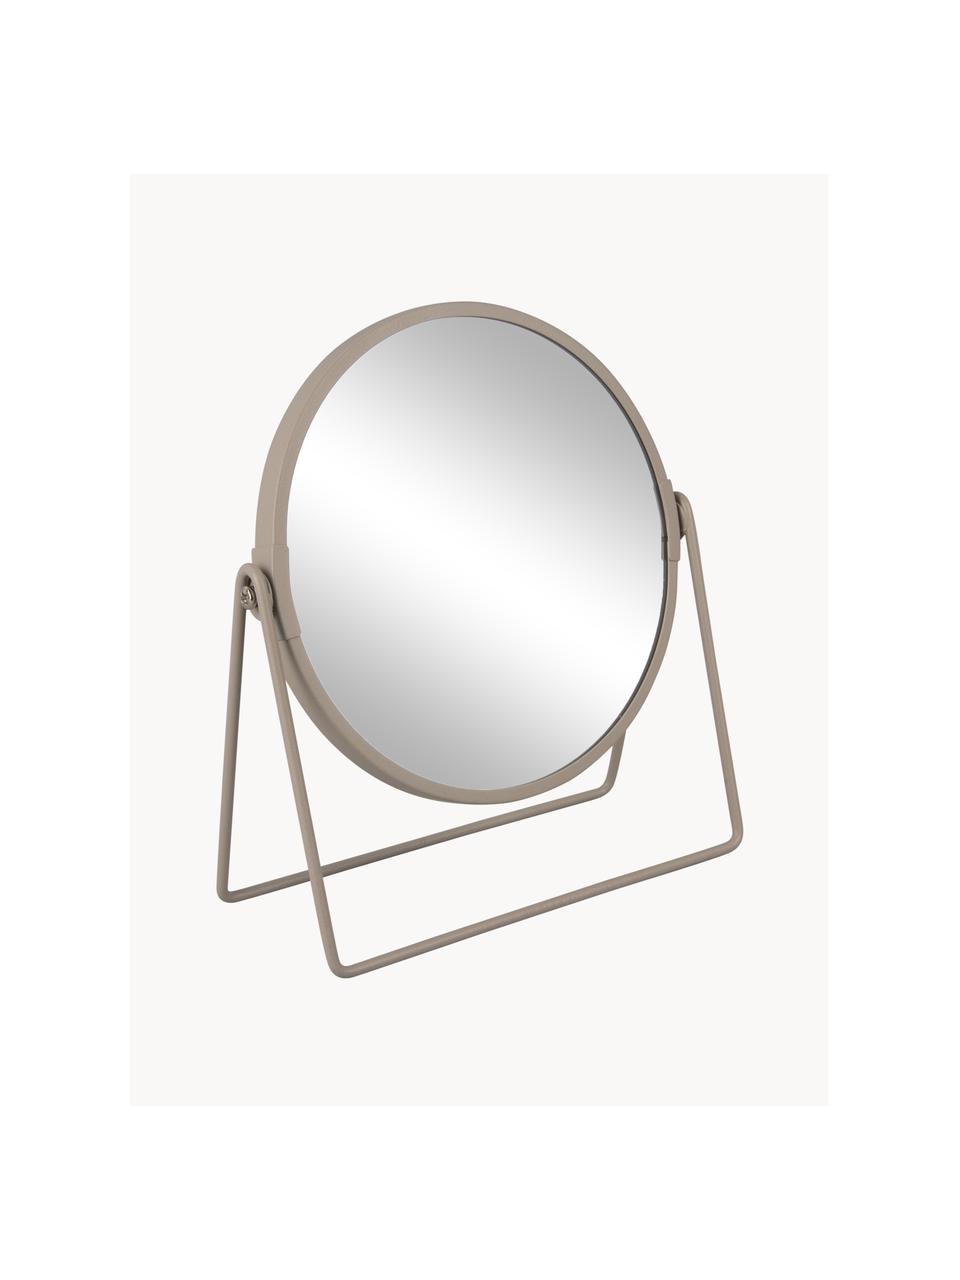 Runder Kosmetikspiegel Enlarge mit Vergrößerung, Rahmen: Kunststoff, Spiegelfläche: Spiegelglas, Greige, B 19 x H 21 cm